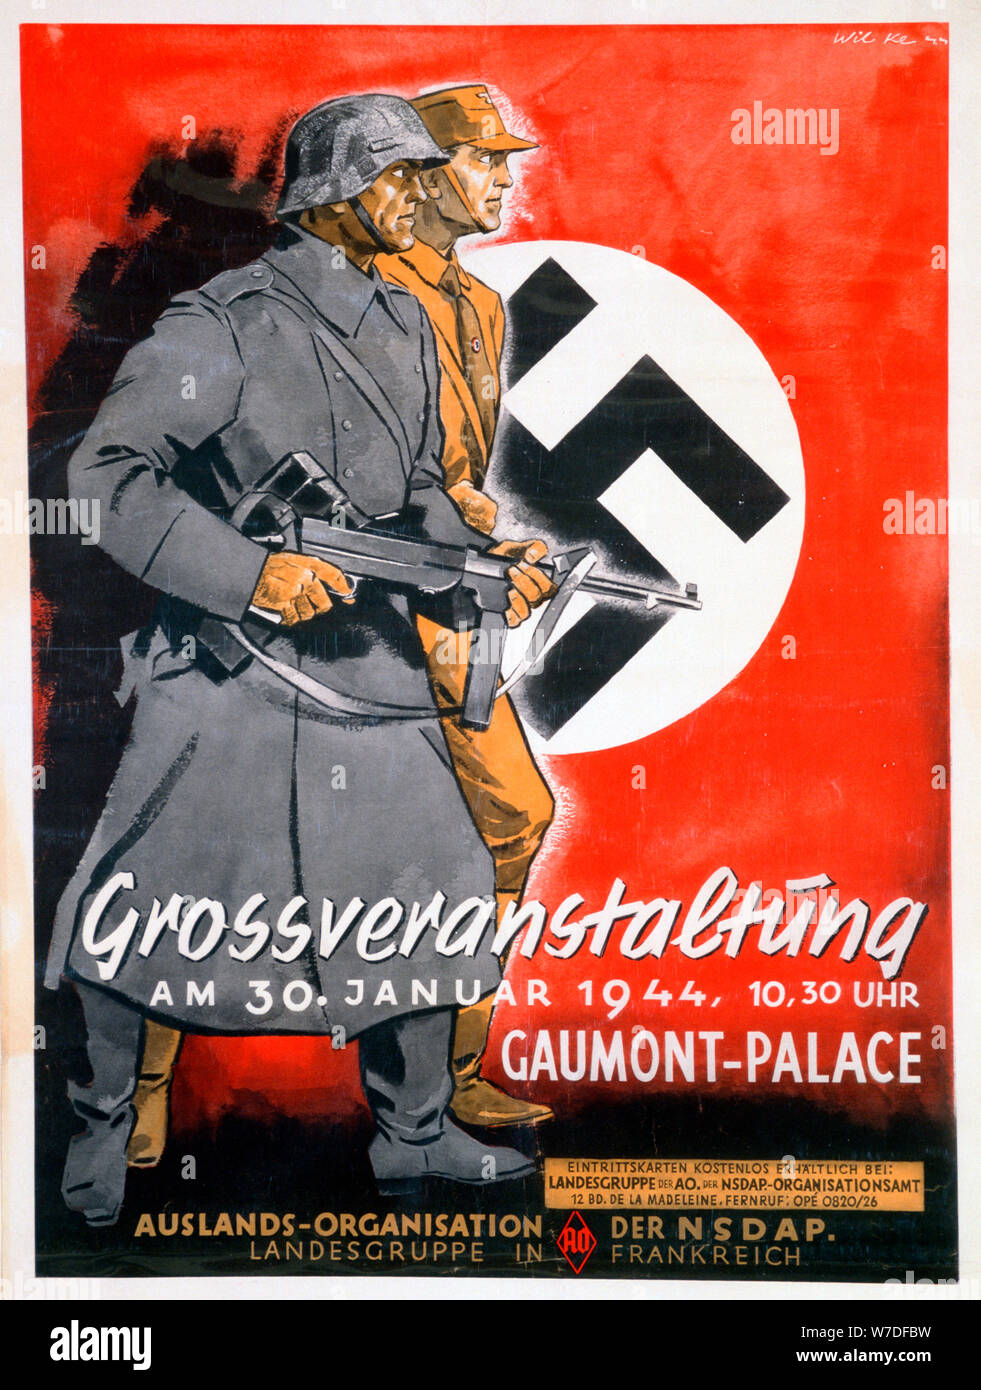 L'affiche de la NSDAP pour une réunion à l'Gaumont Palace, France, 30 janvier 1944. Artiste : Inconnu Banque D'Images